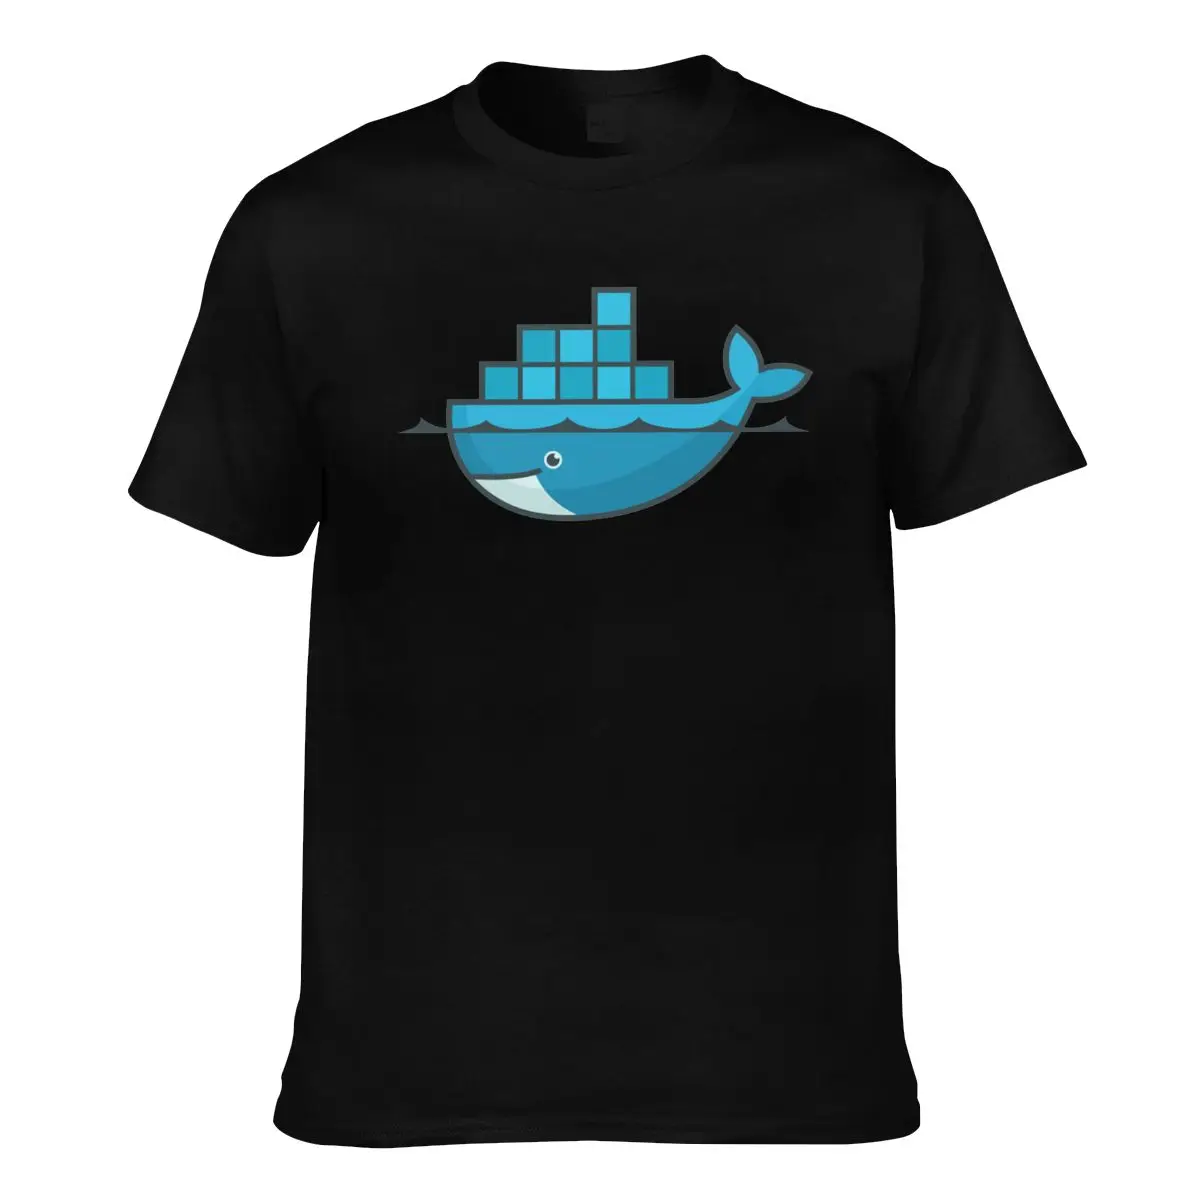 Футболка для программирования Dead Docker, компьютерная футболка Geek, хлопковая мужская футболка с негабаритным принтом, пляжная футболка